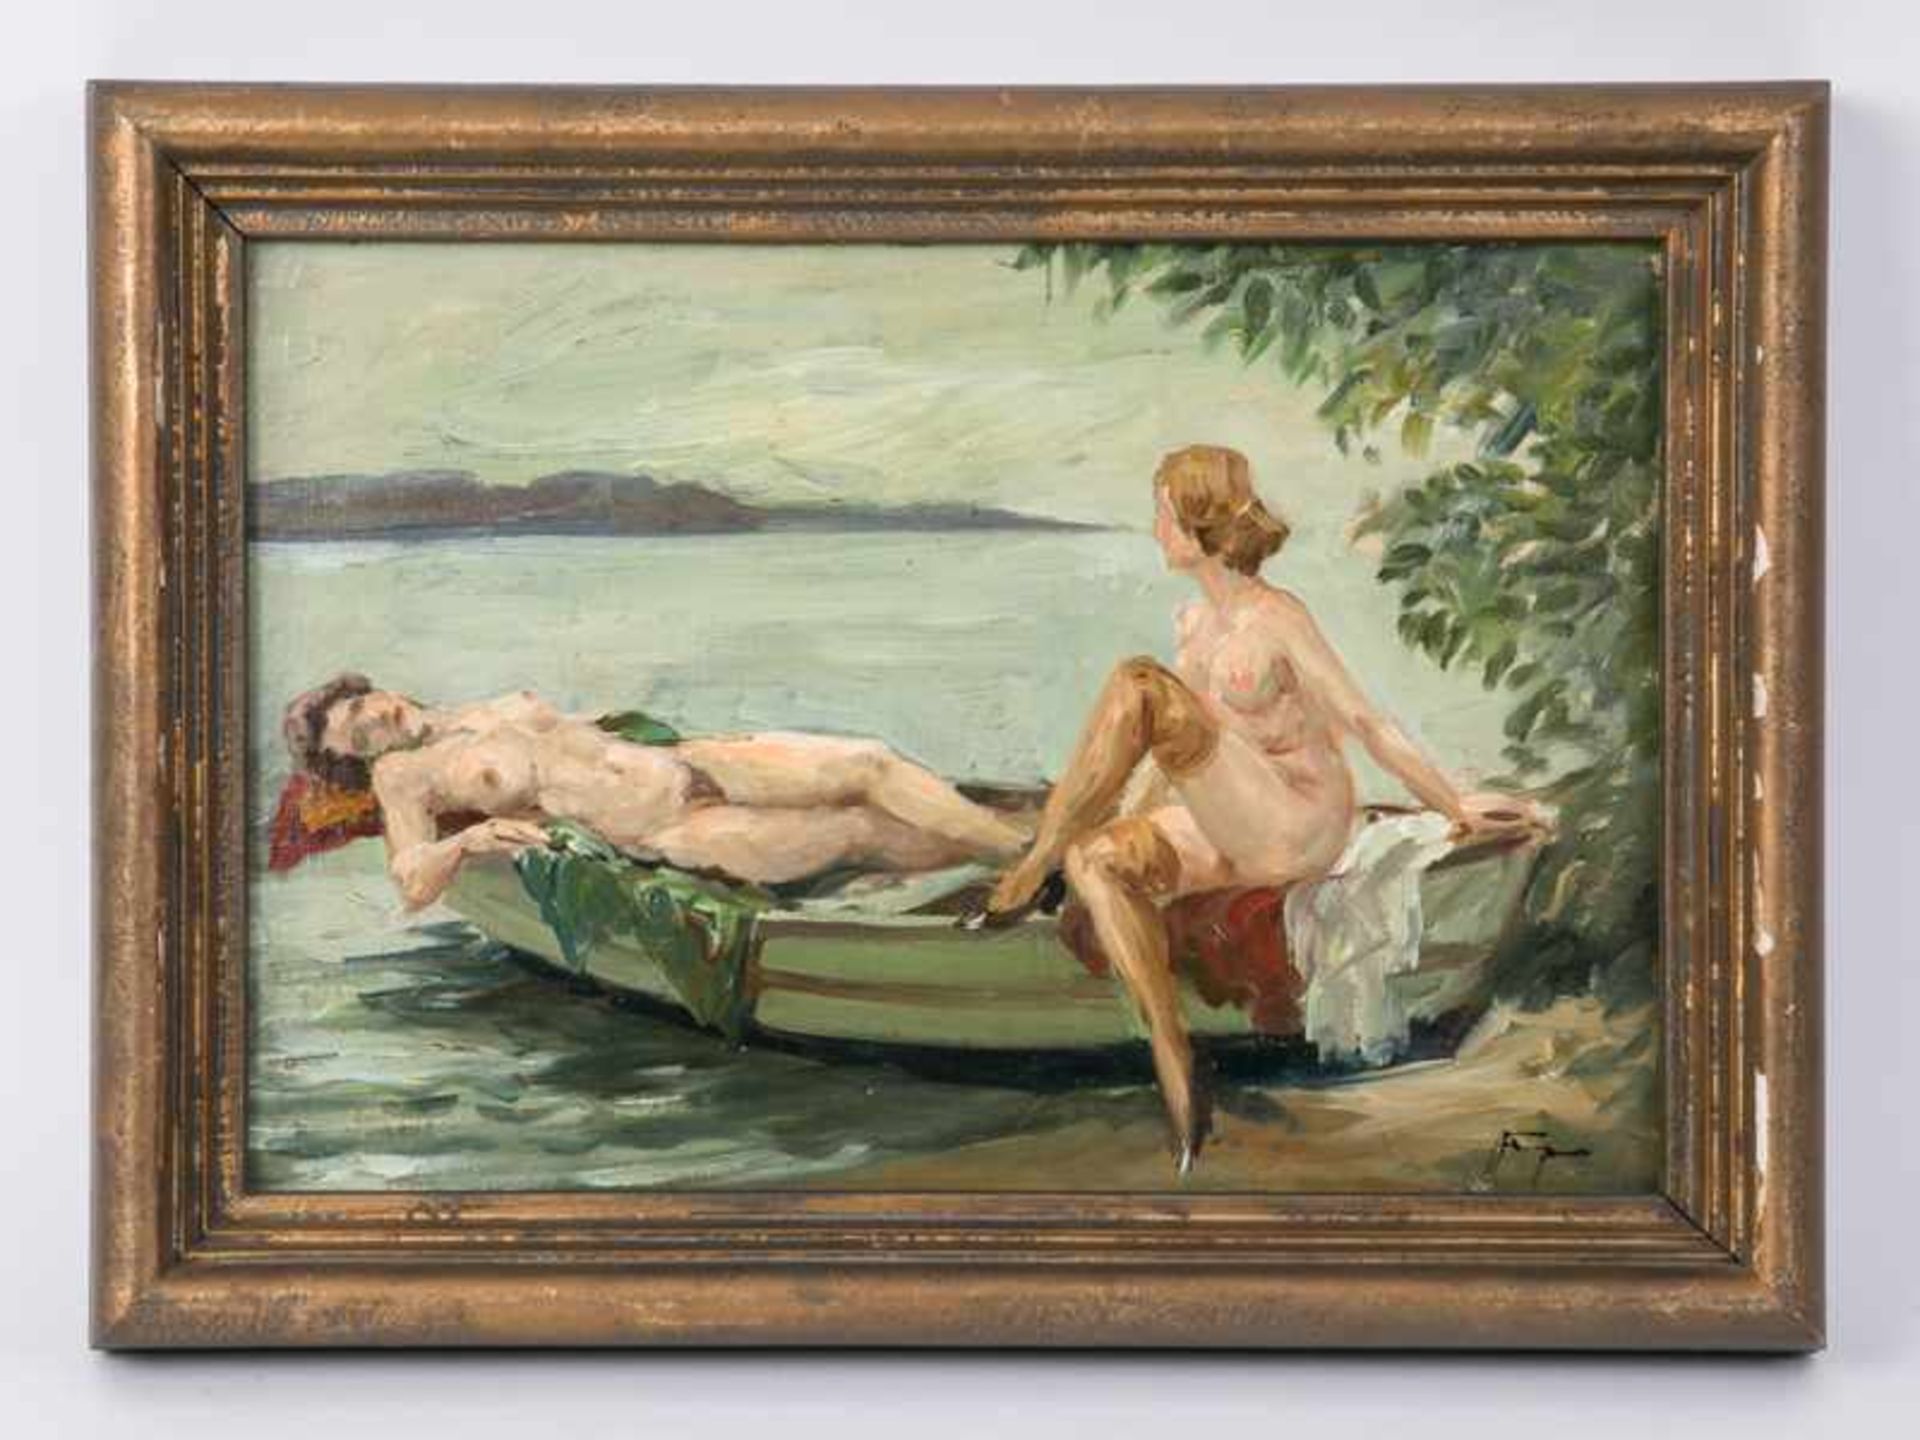 Fenger, Hans (1893 - 1980). Öl auf Malkarton, 2 weibliche Akte in einem Boot am Seeufer; stilisierte